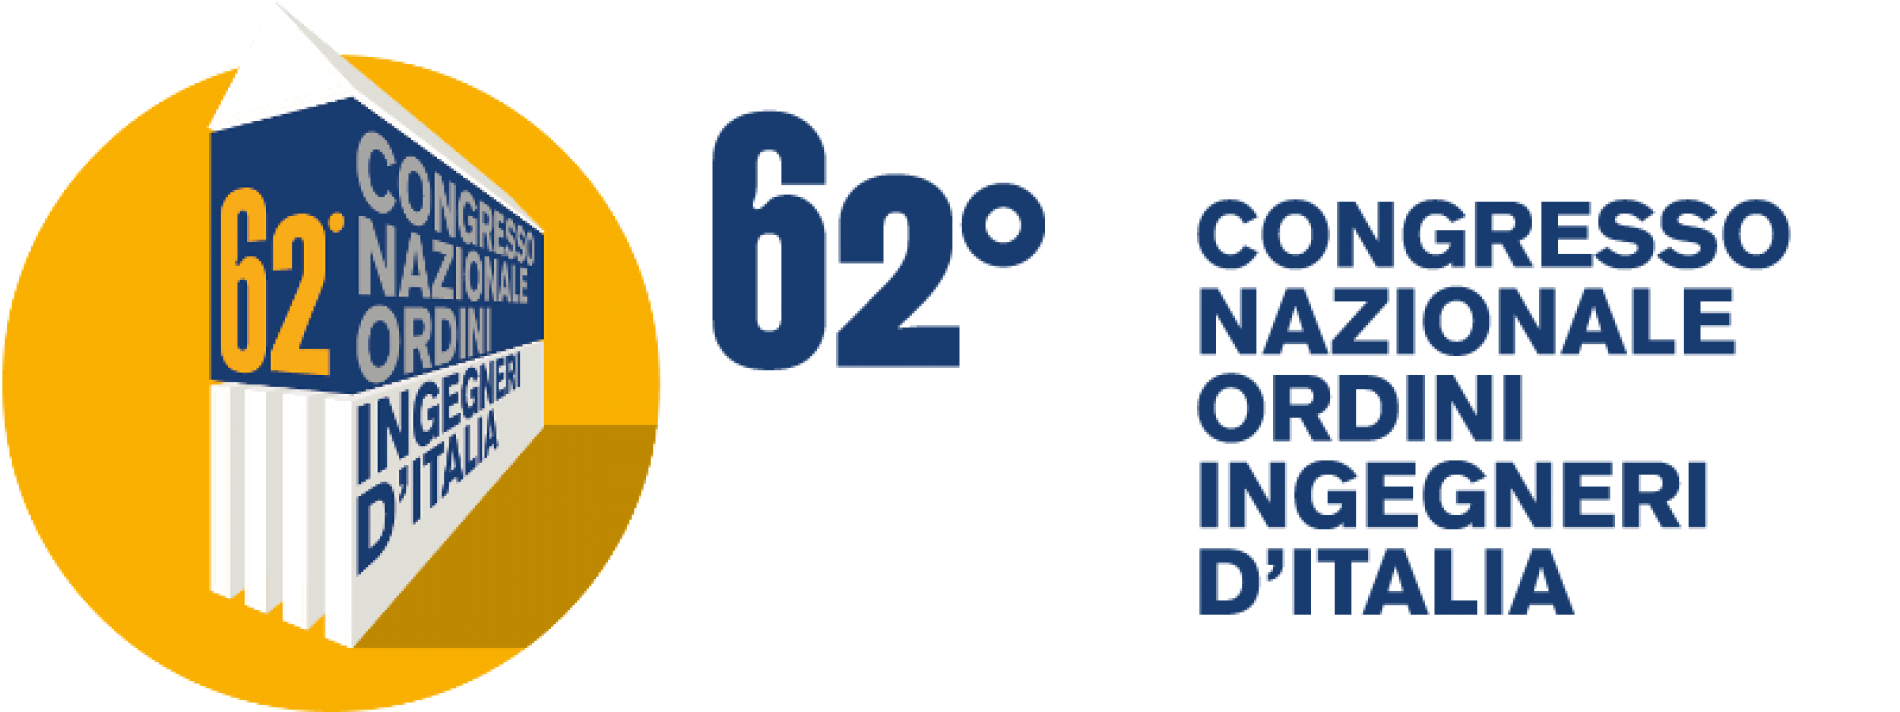 62° Congresso Nazionale degli Ordini degli Ingegneri d’Italia